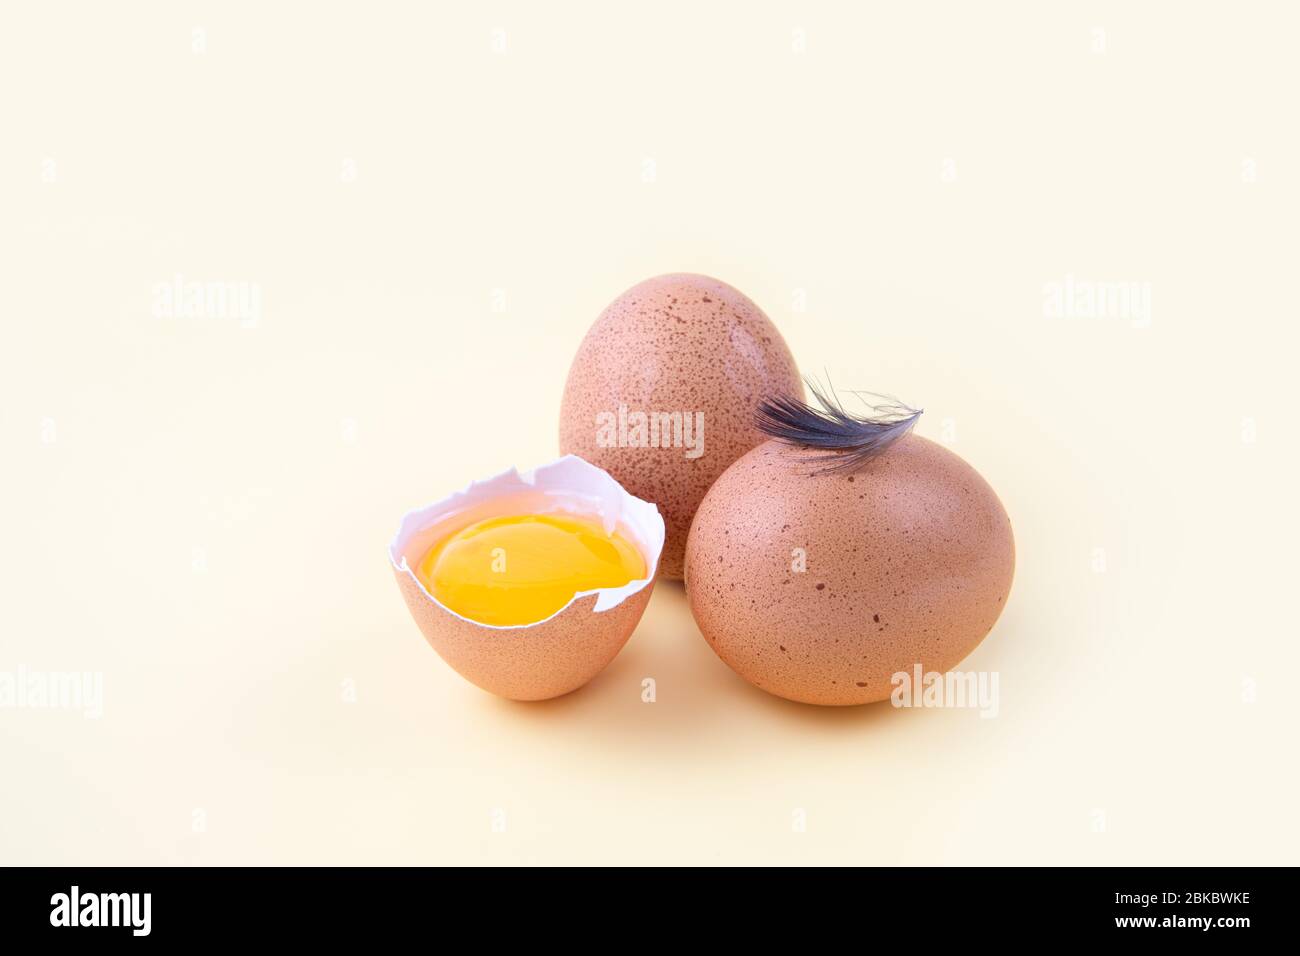 Uova di pollo, un uovo semitelato con tuorlo e una piccola piuma su uno sfondo neutro. Primo piano, messa a fuoco selettiva. Concetto di mercato biologico Foto Stock